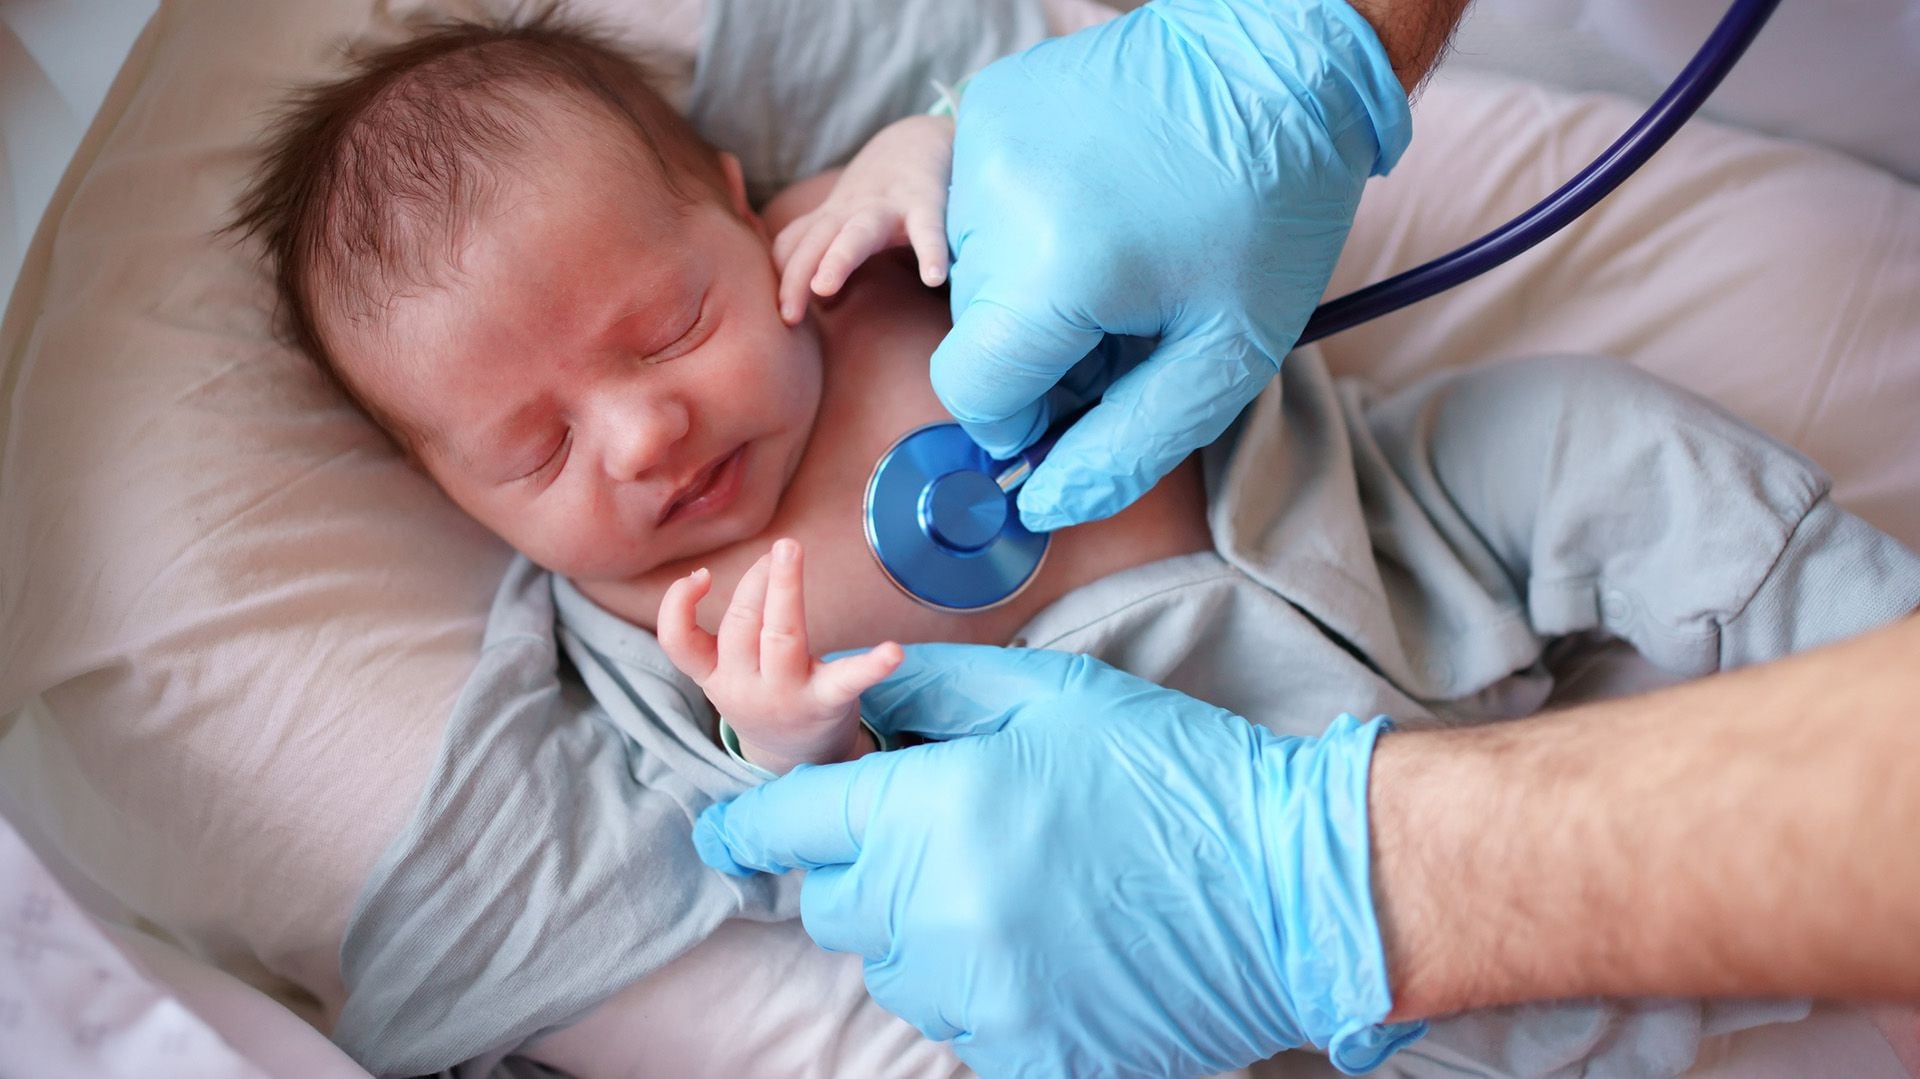 El virus respiratorio sincitial puede ser leve para algunos, pero representa un peligro para bebés y adultos mayores
(Getty Images)